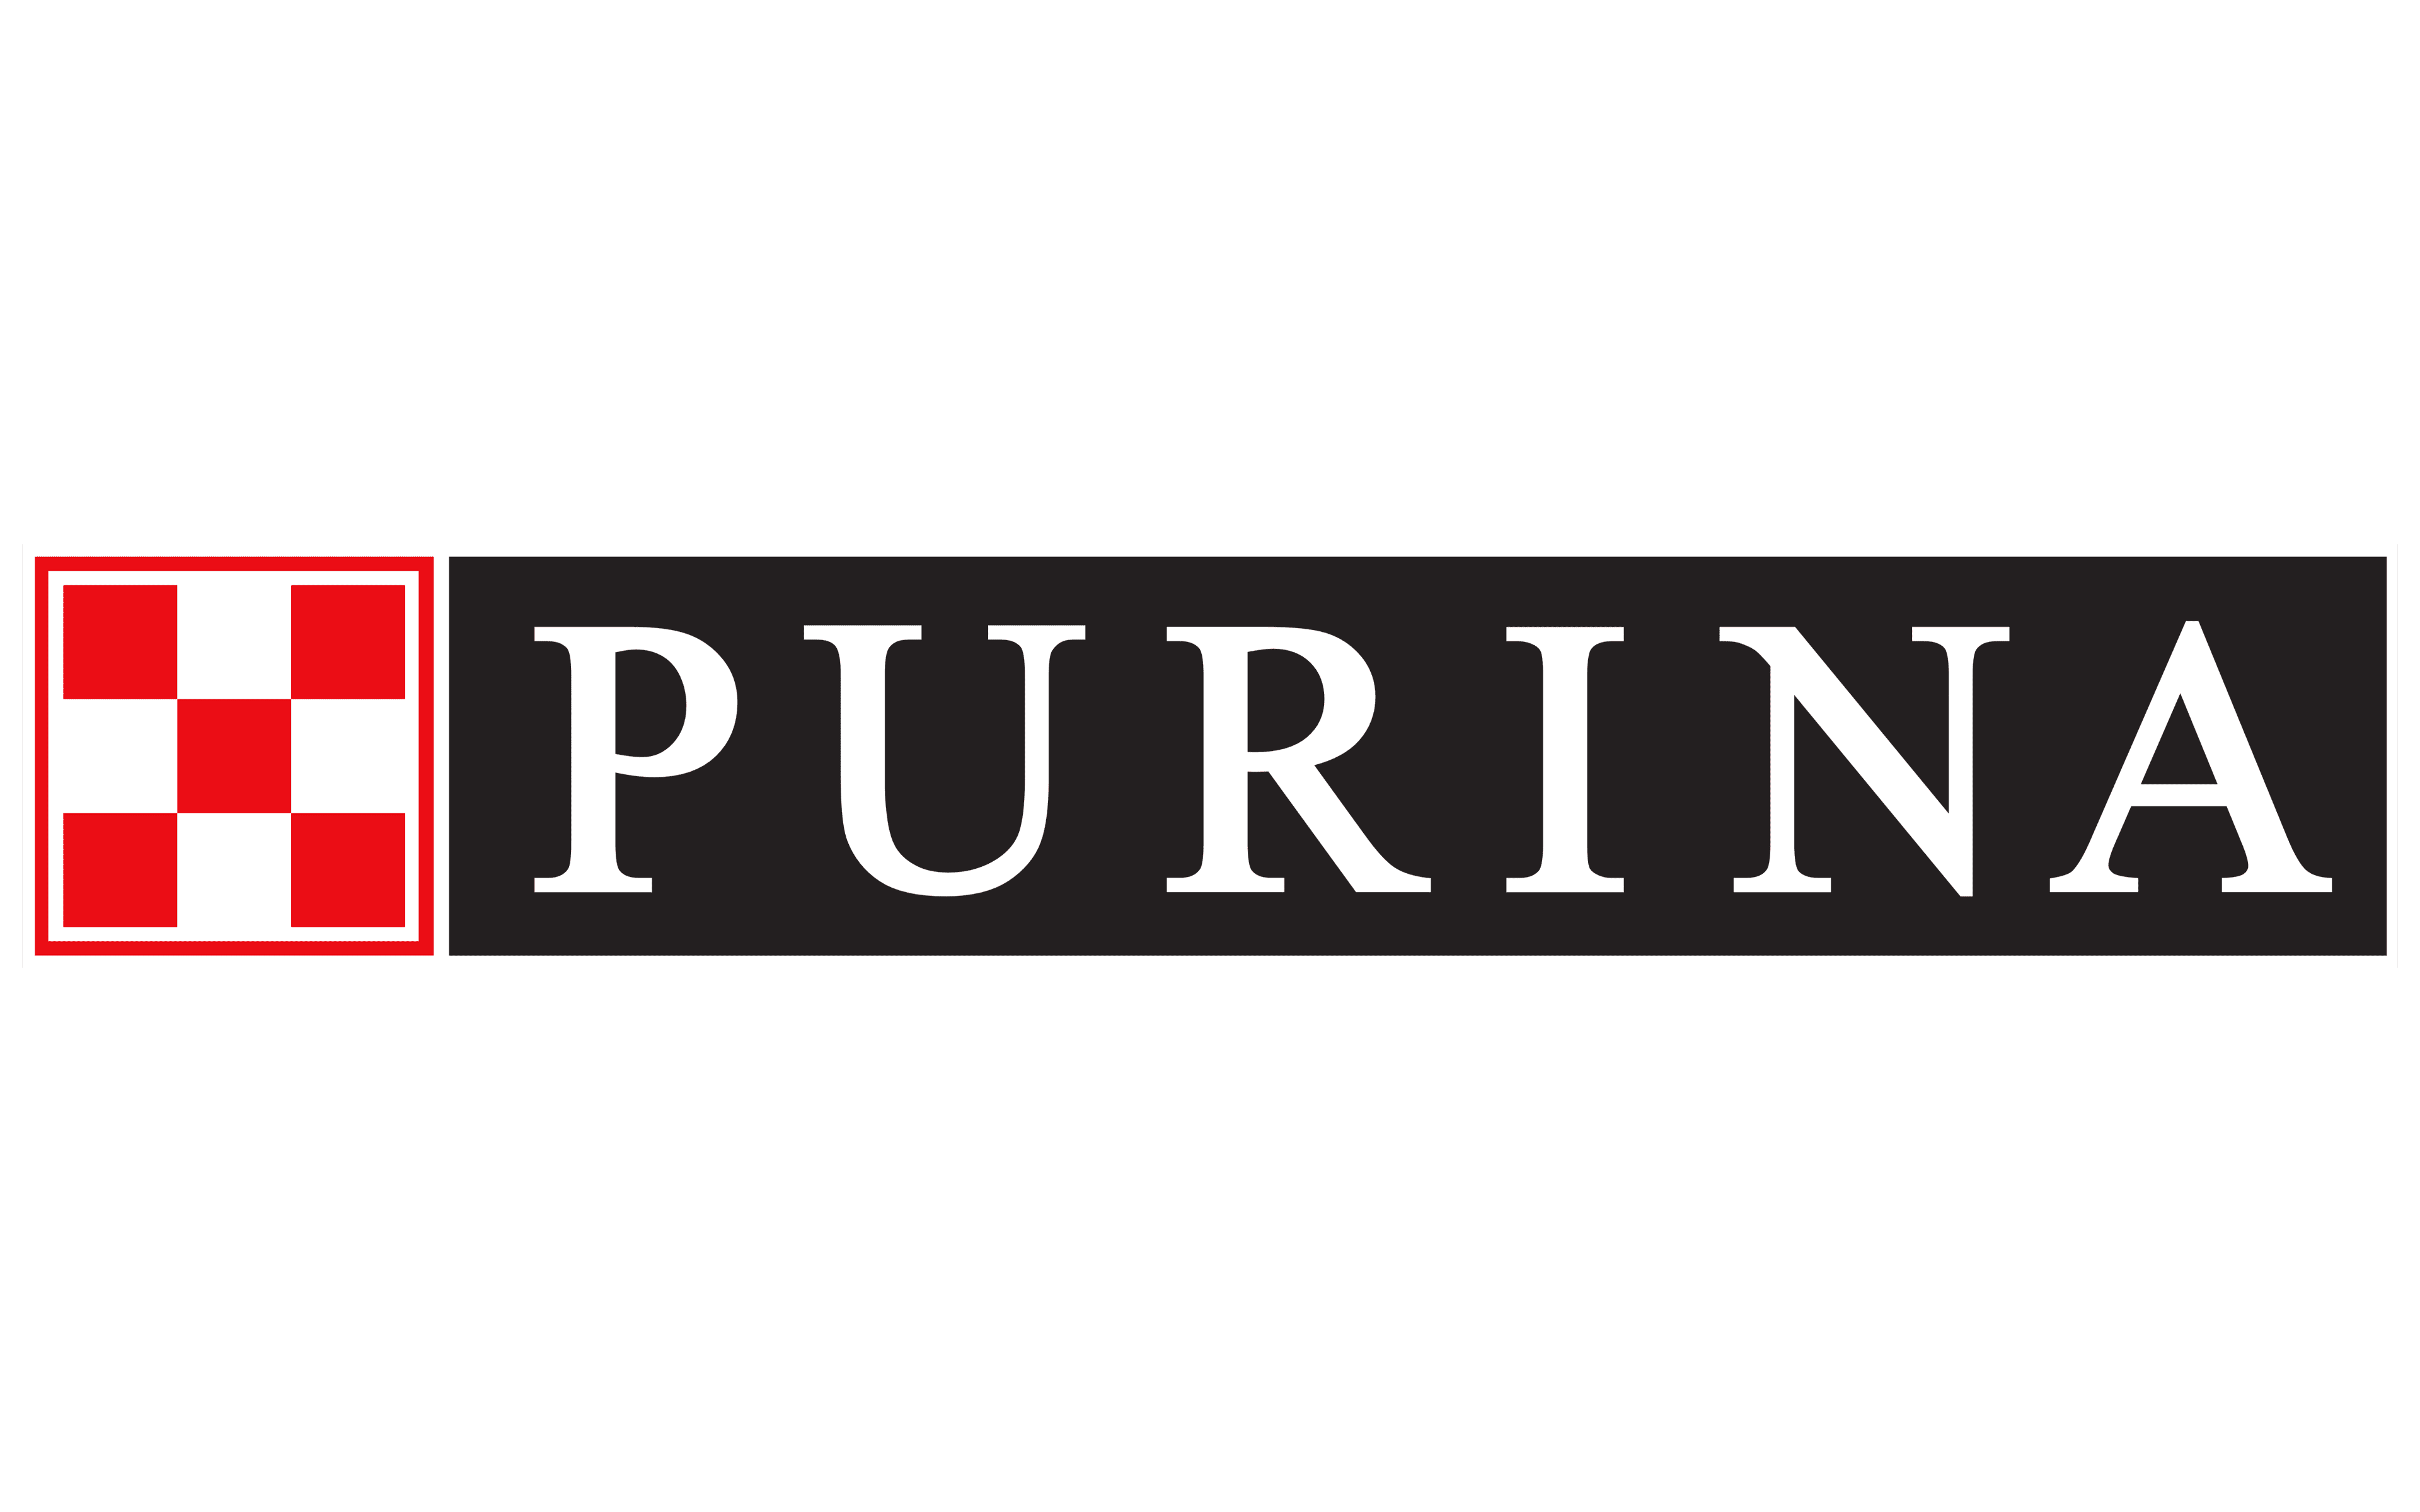 purina one transparent logo